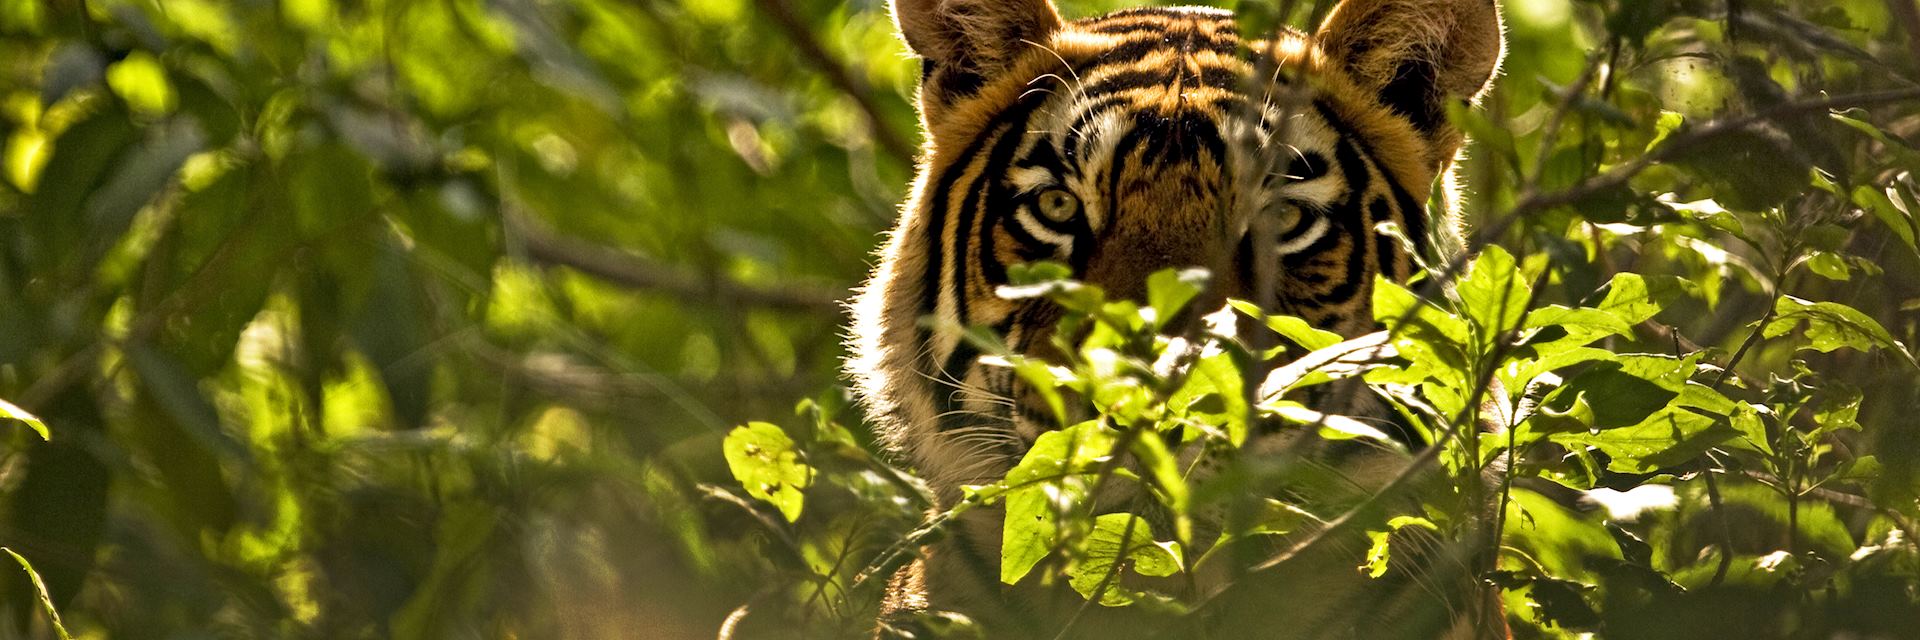 Tiger, Ranthambhore National Park, India